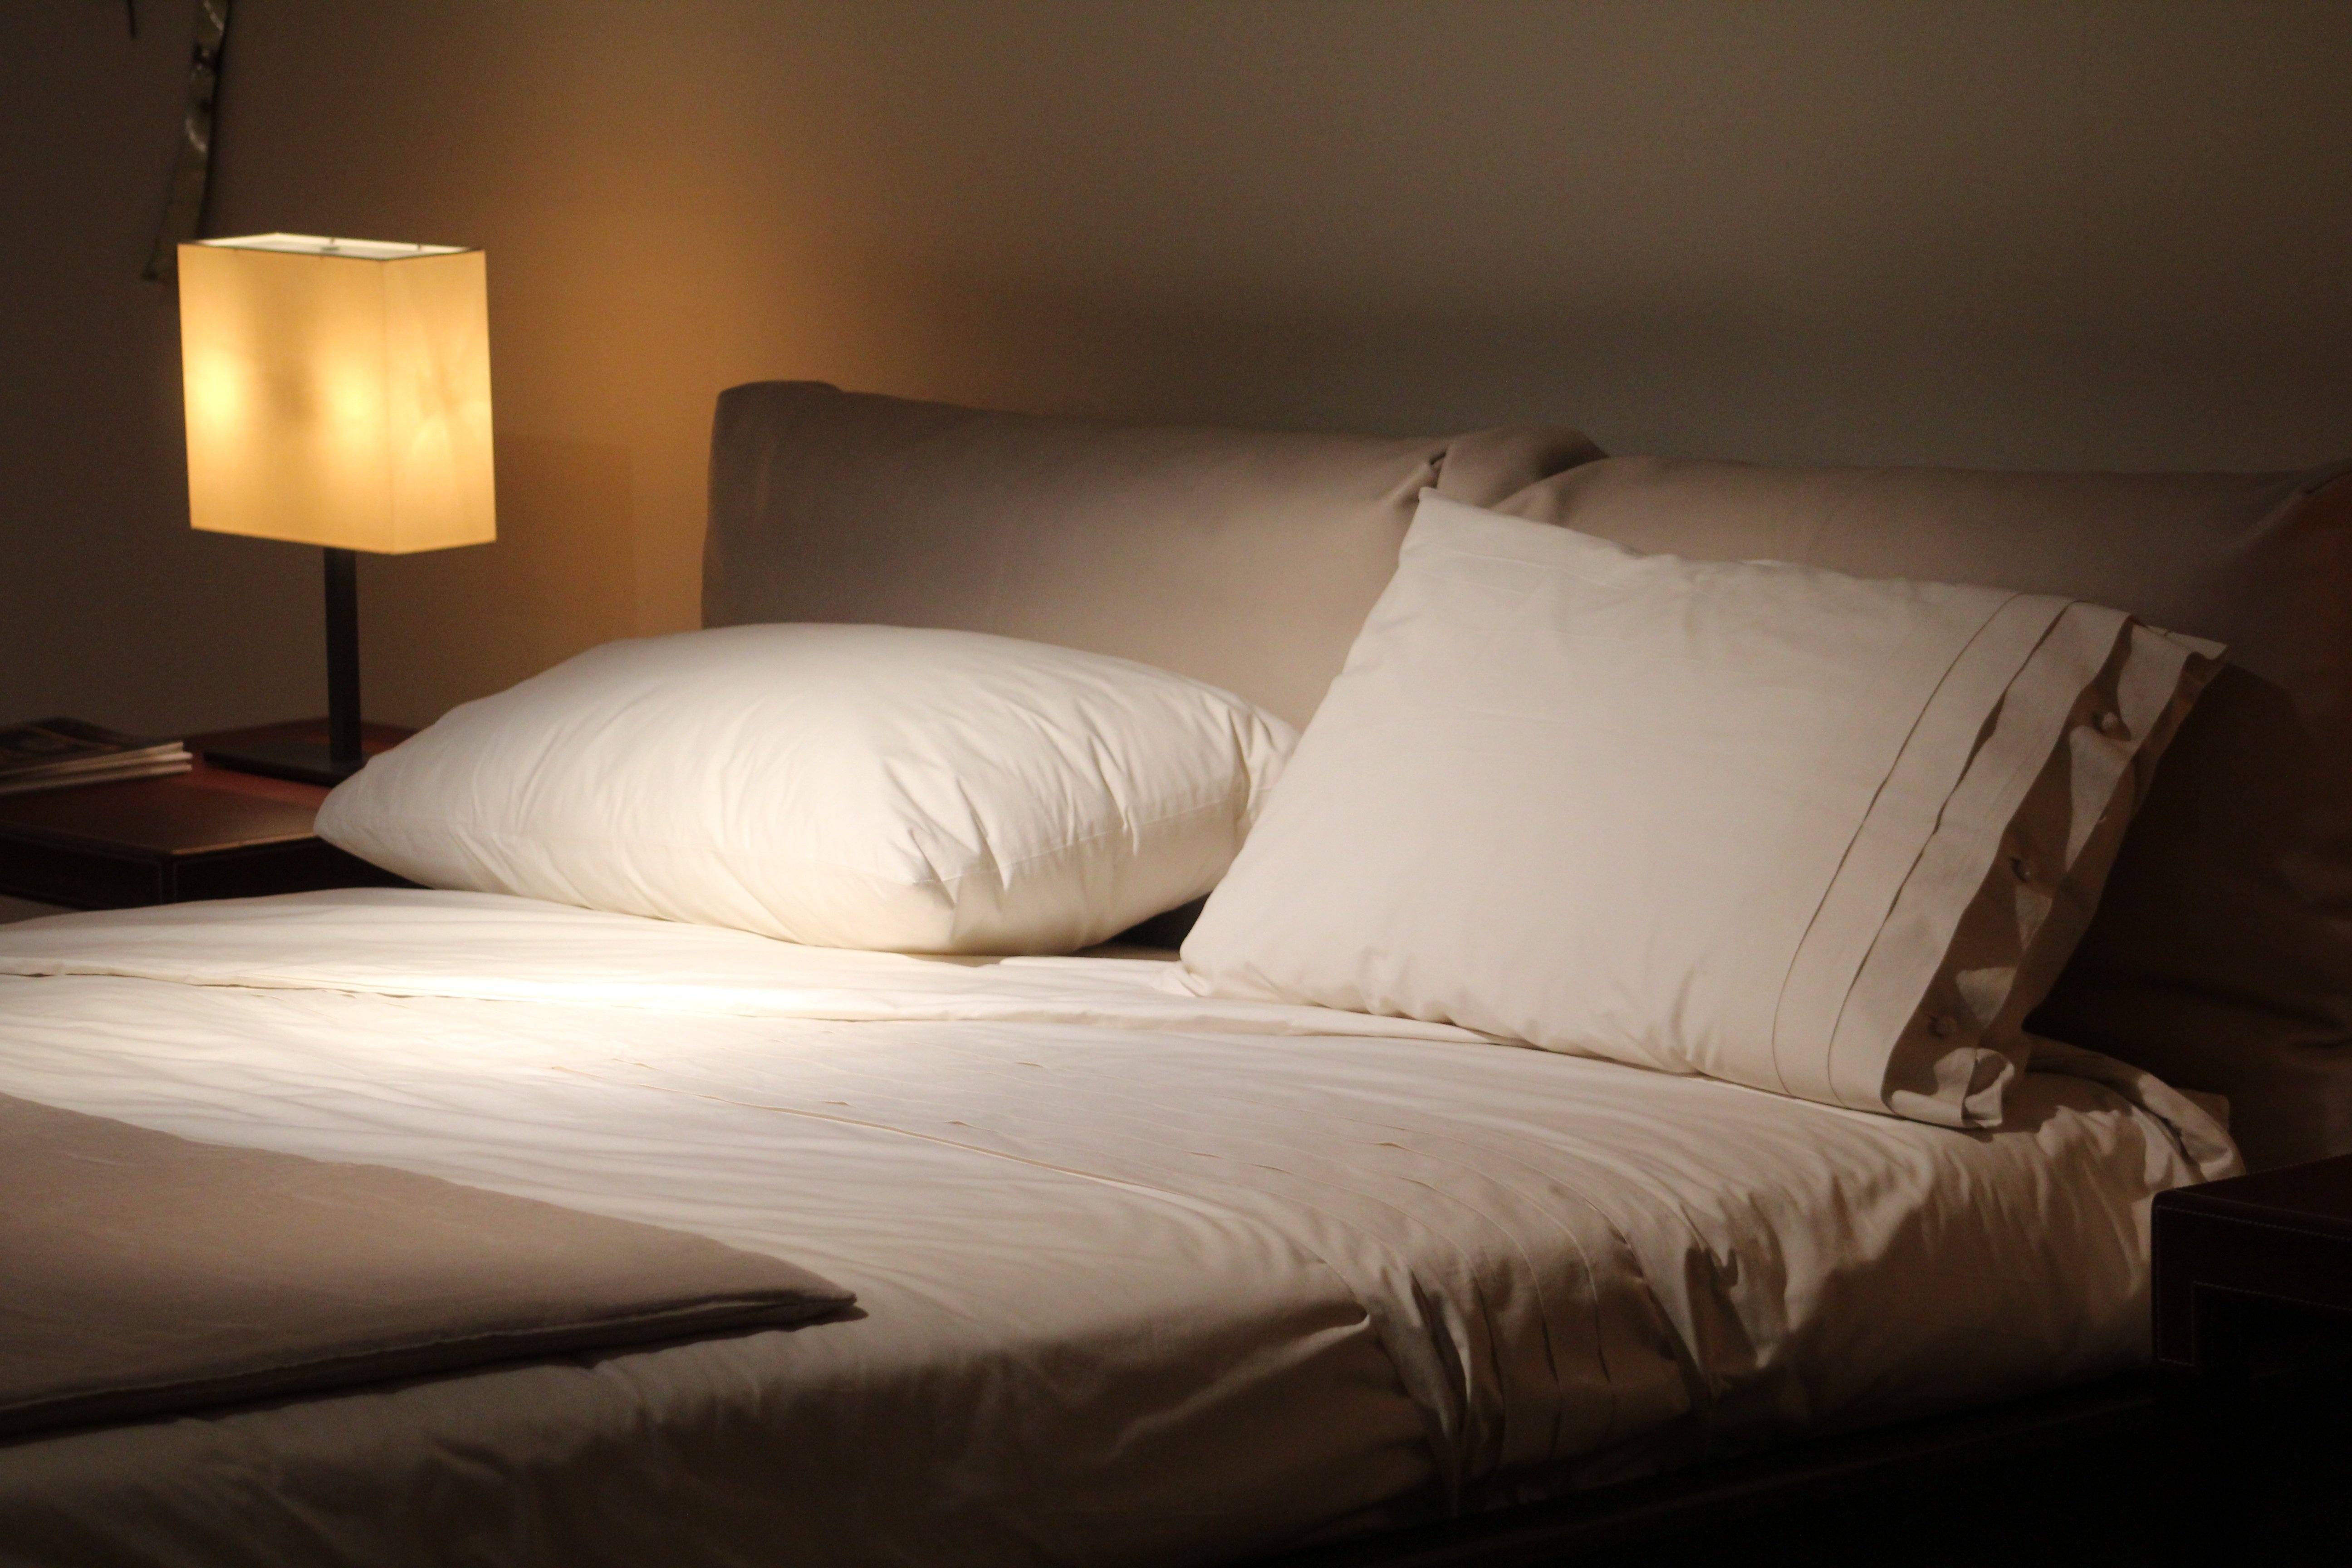 Постель постелька. Подушки на кровати. Кровать в спальню. Кровать ночью. Кровать фон.